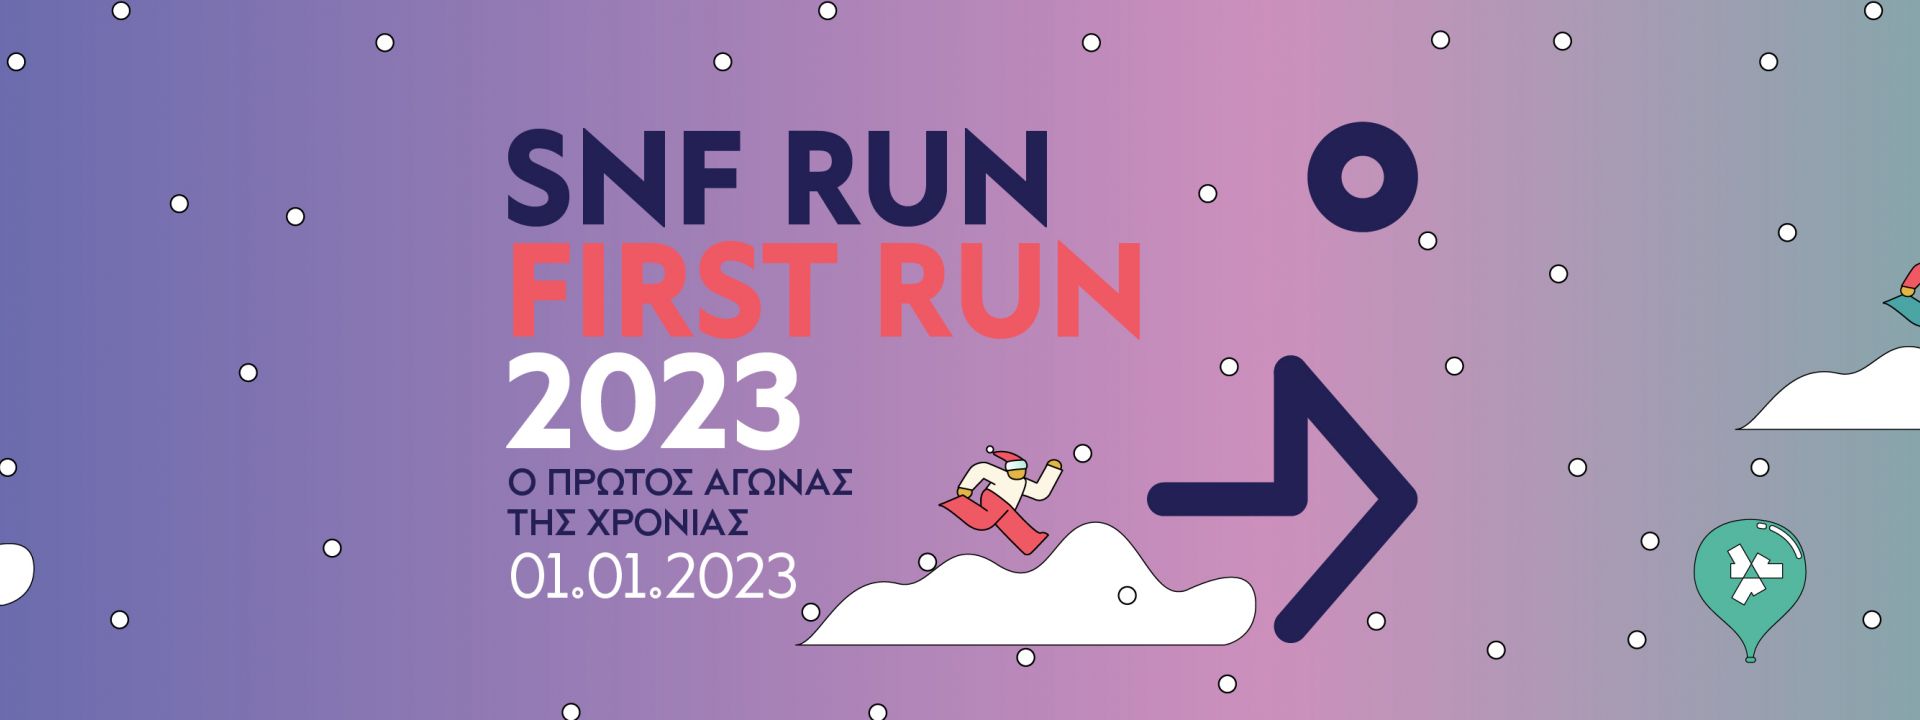 SNF RUN: 2023 FIRST RUN - Εικόνα